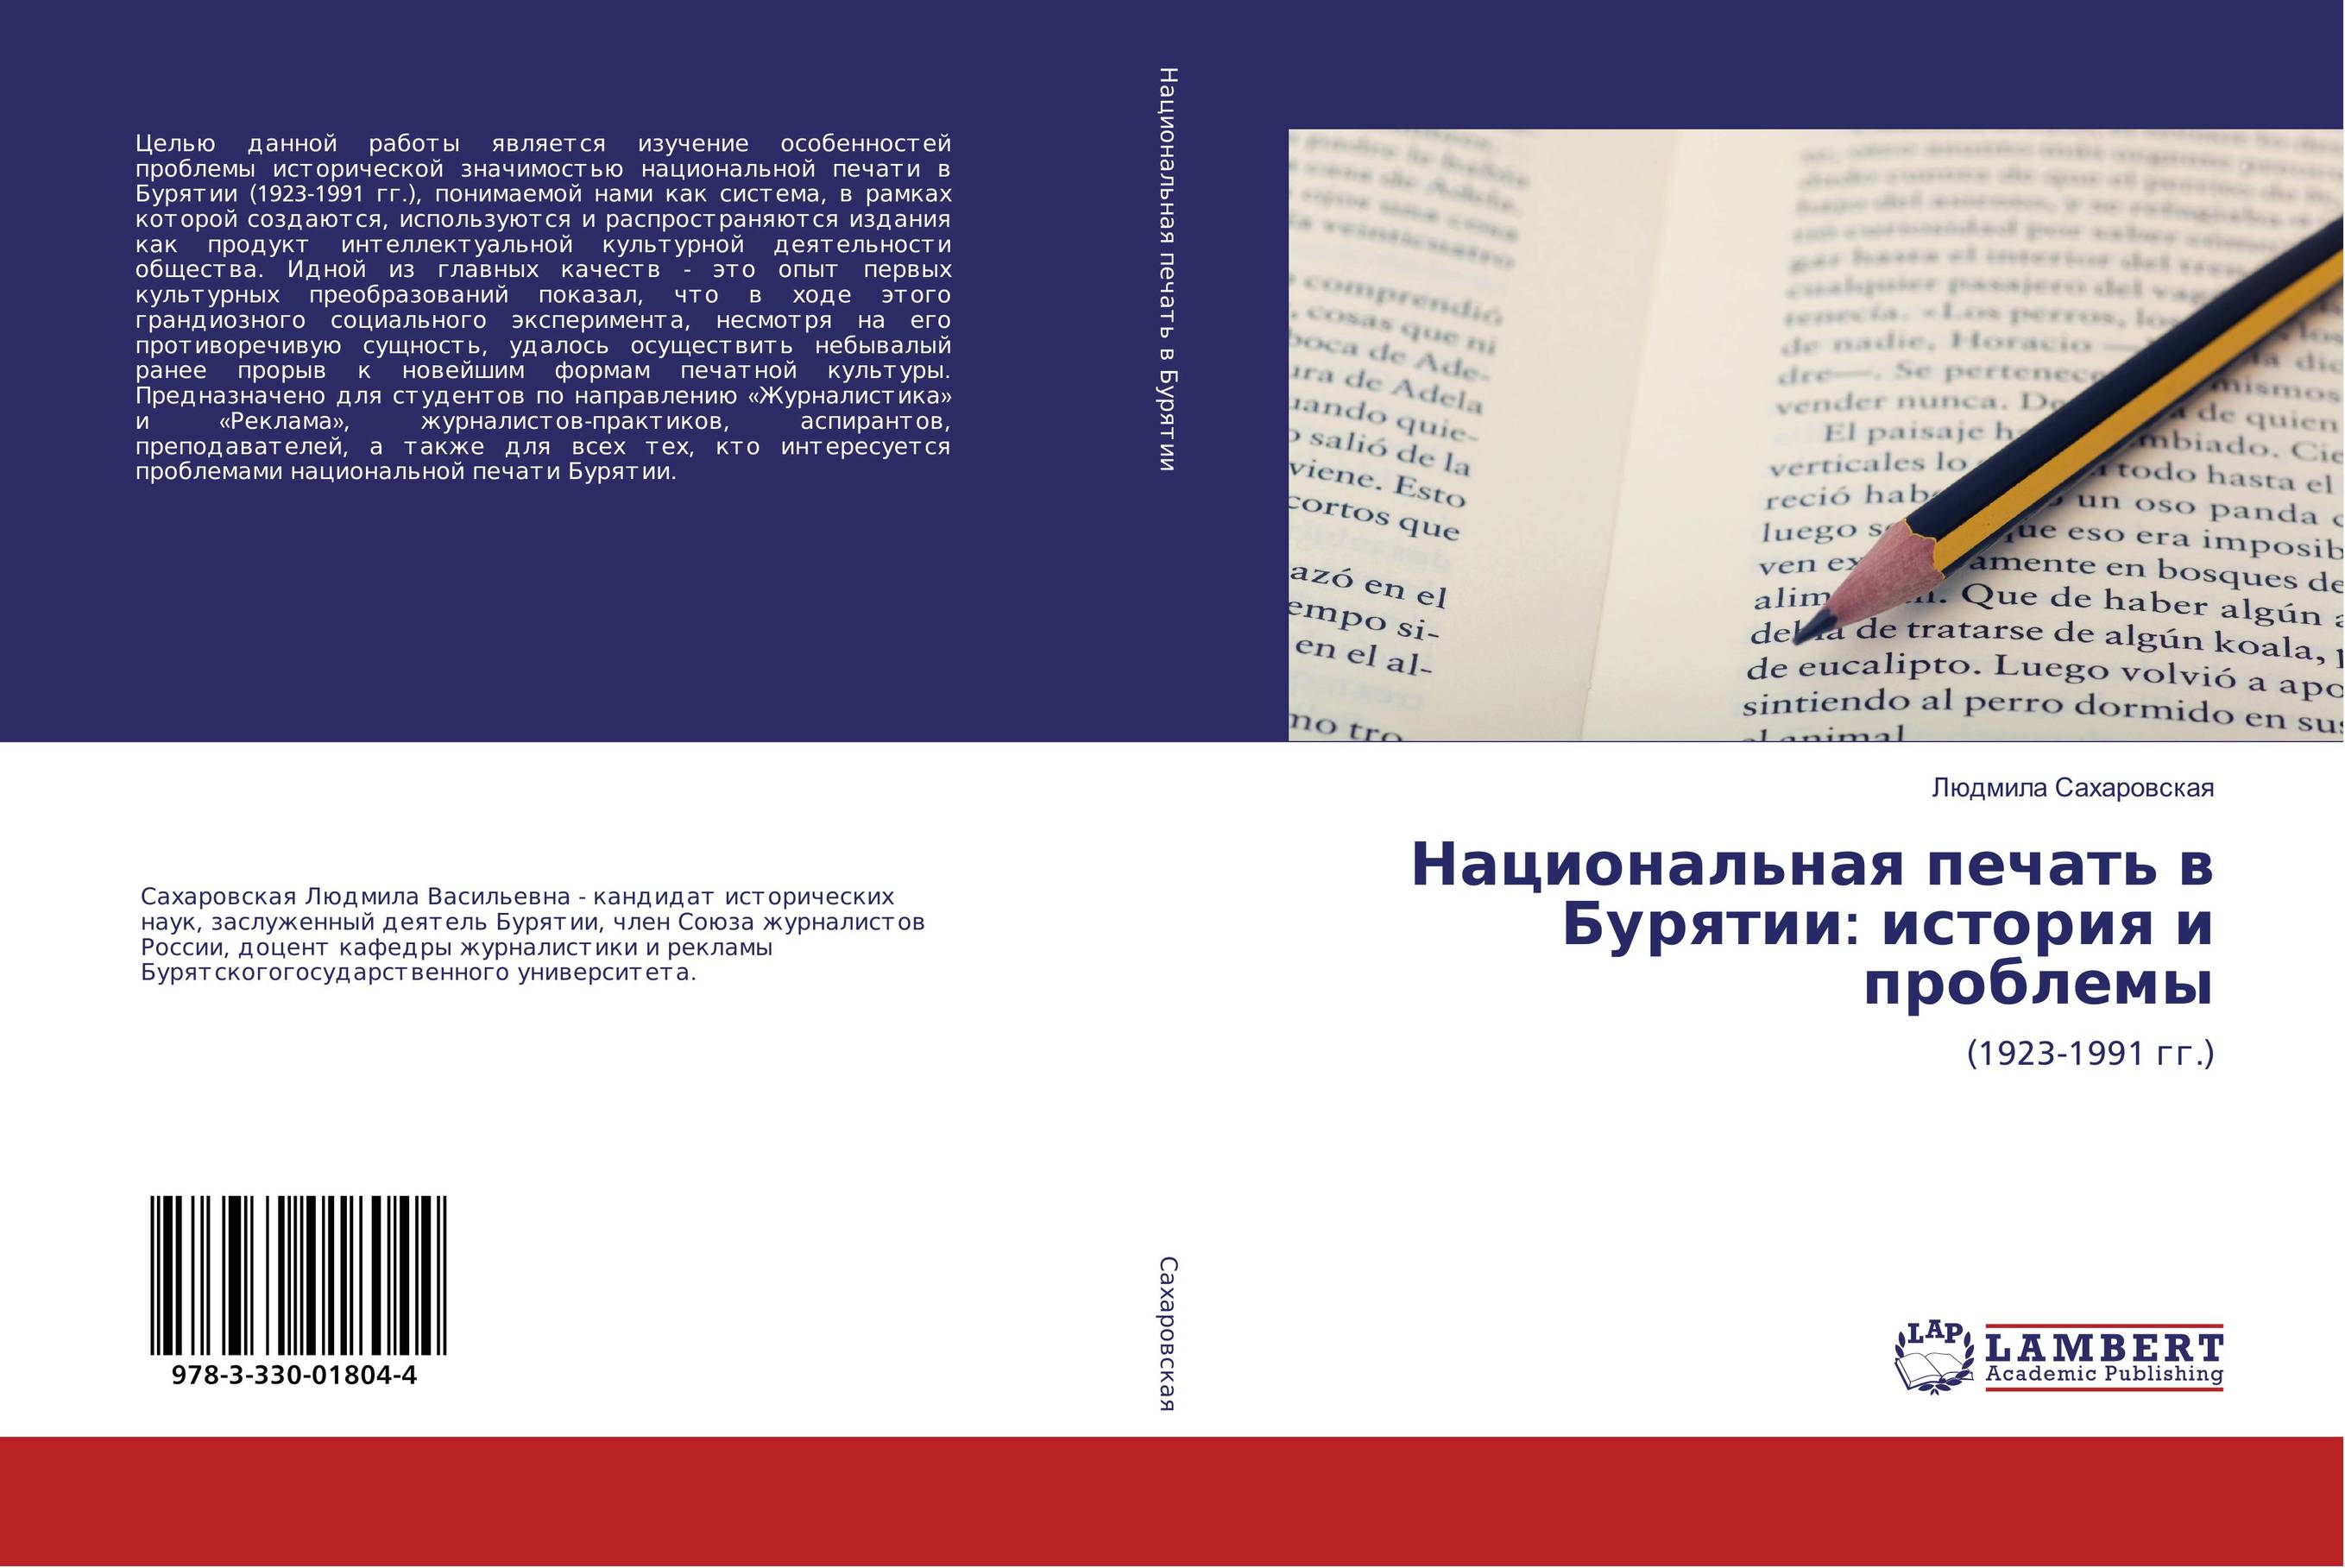 
        Национальная печать в Бурятии: история и проблемы. (1923-1991 гг.).
      